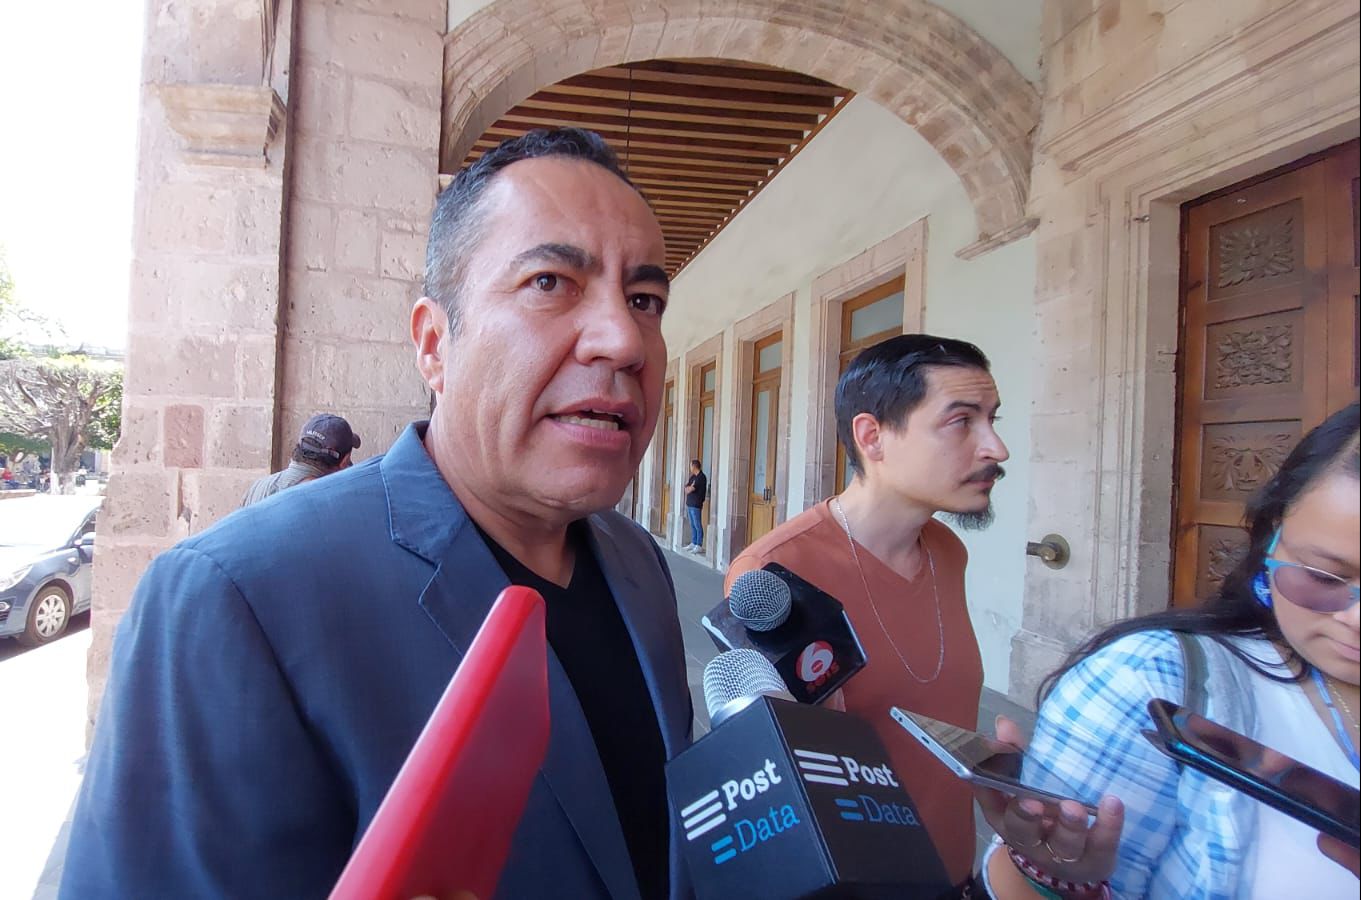 Coaliciones no son viables sostiene Carlos Herrera